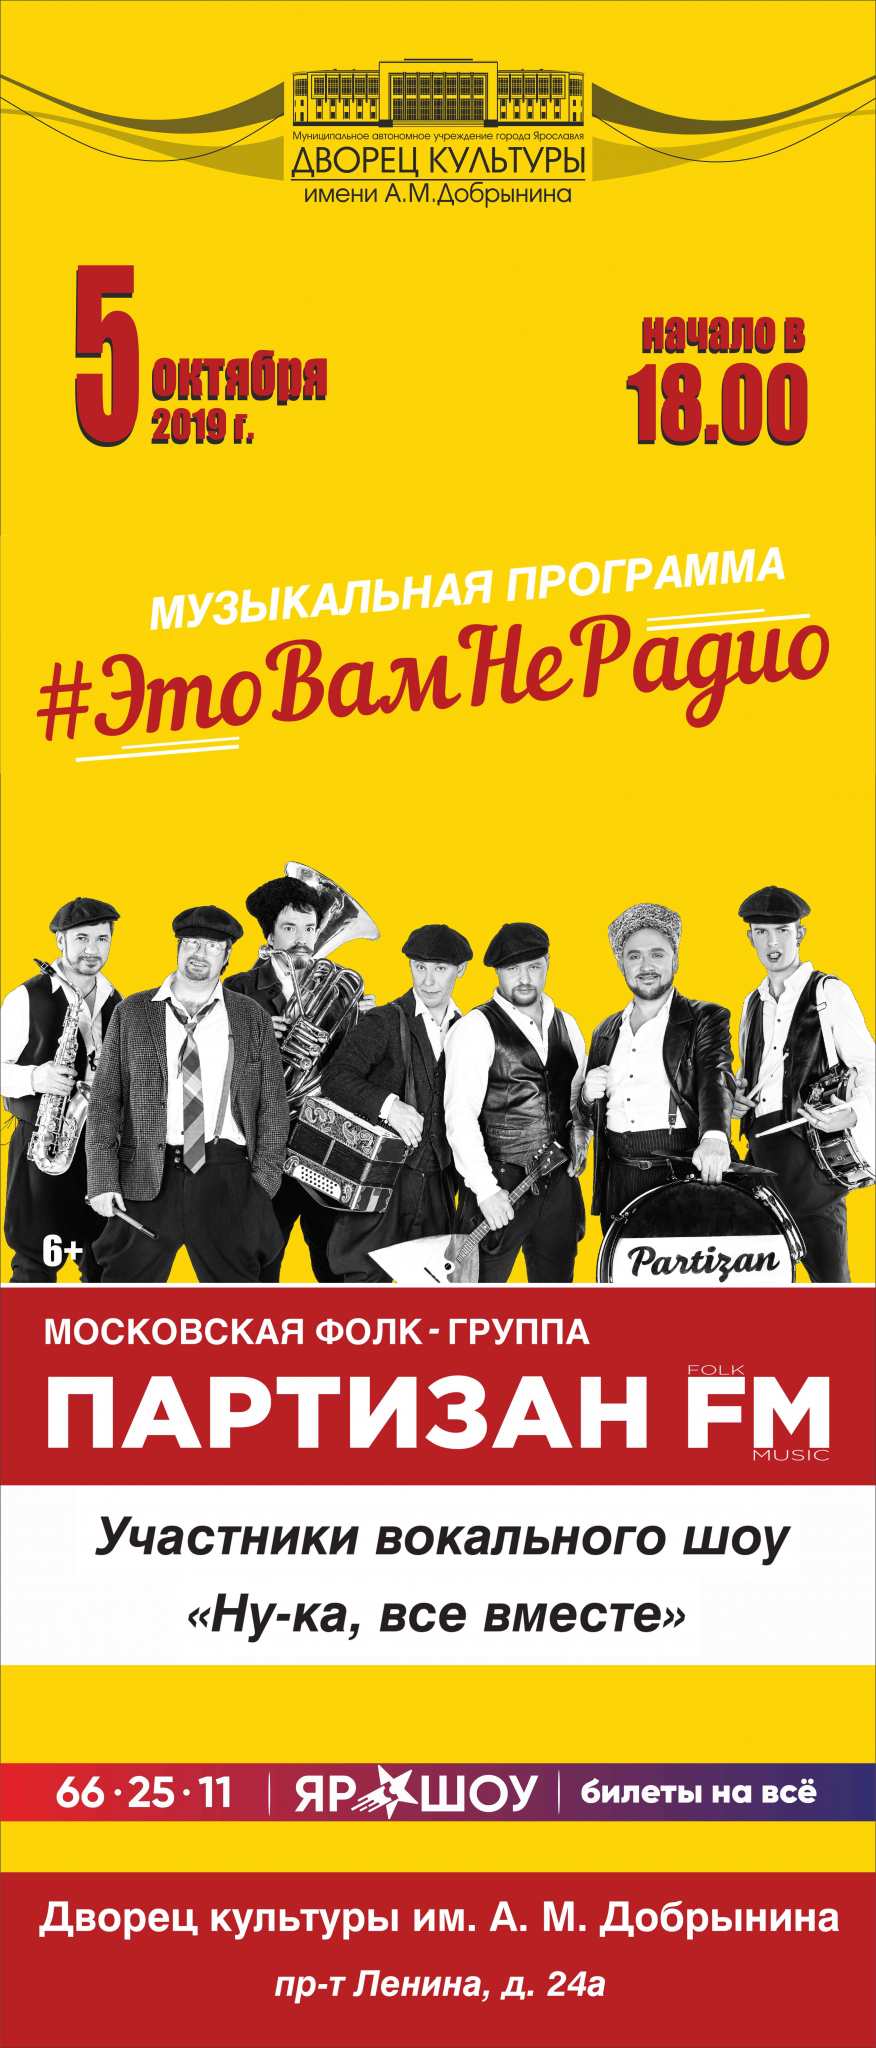 Московская фолк-группа Партизан FM